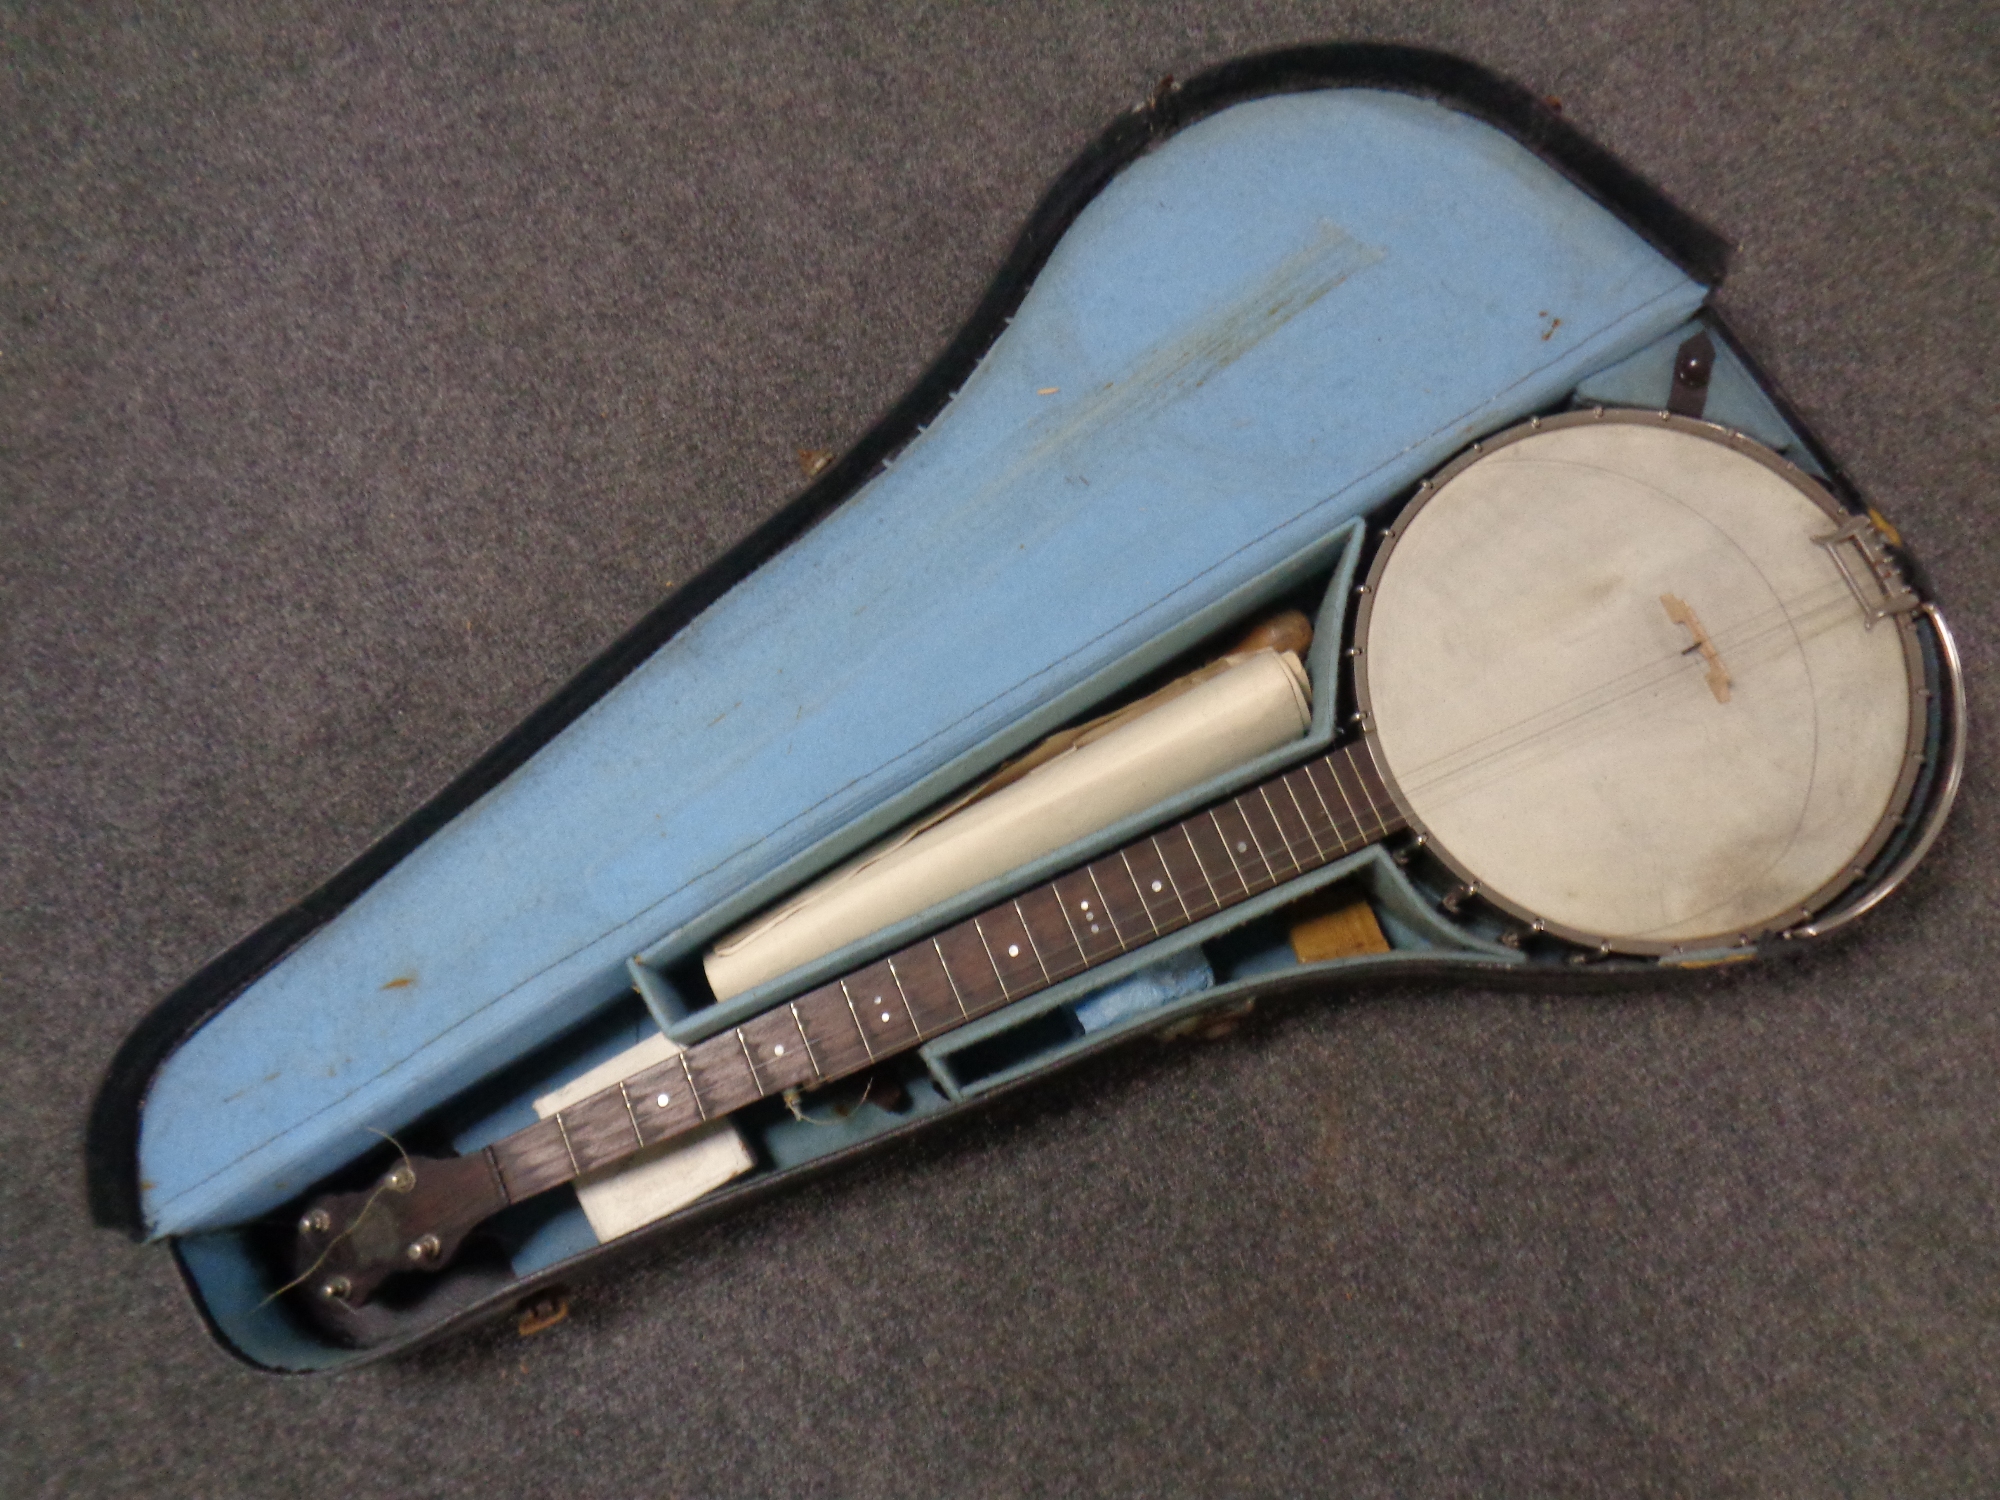 A vintage banjo in carry case